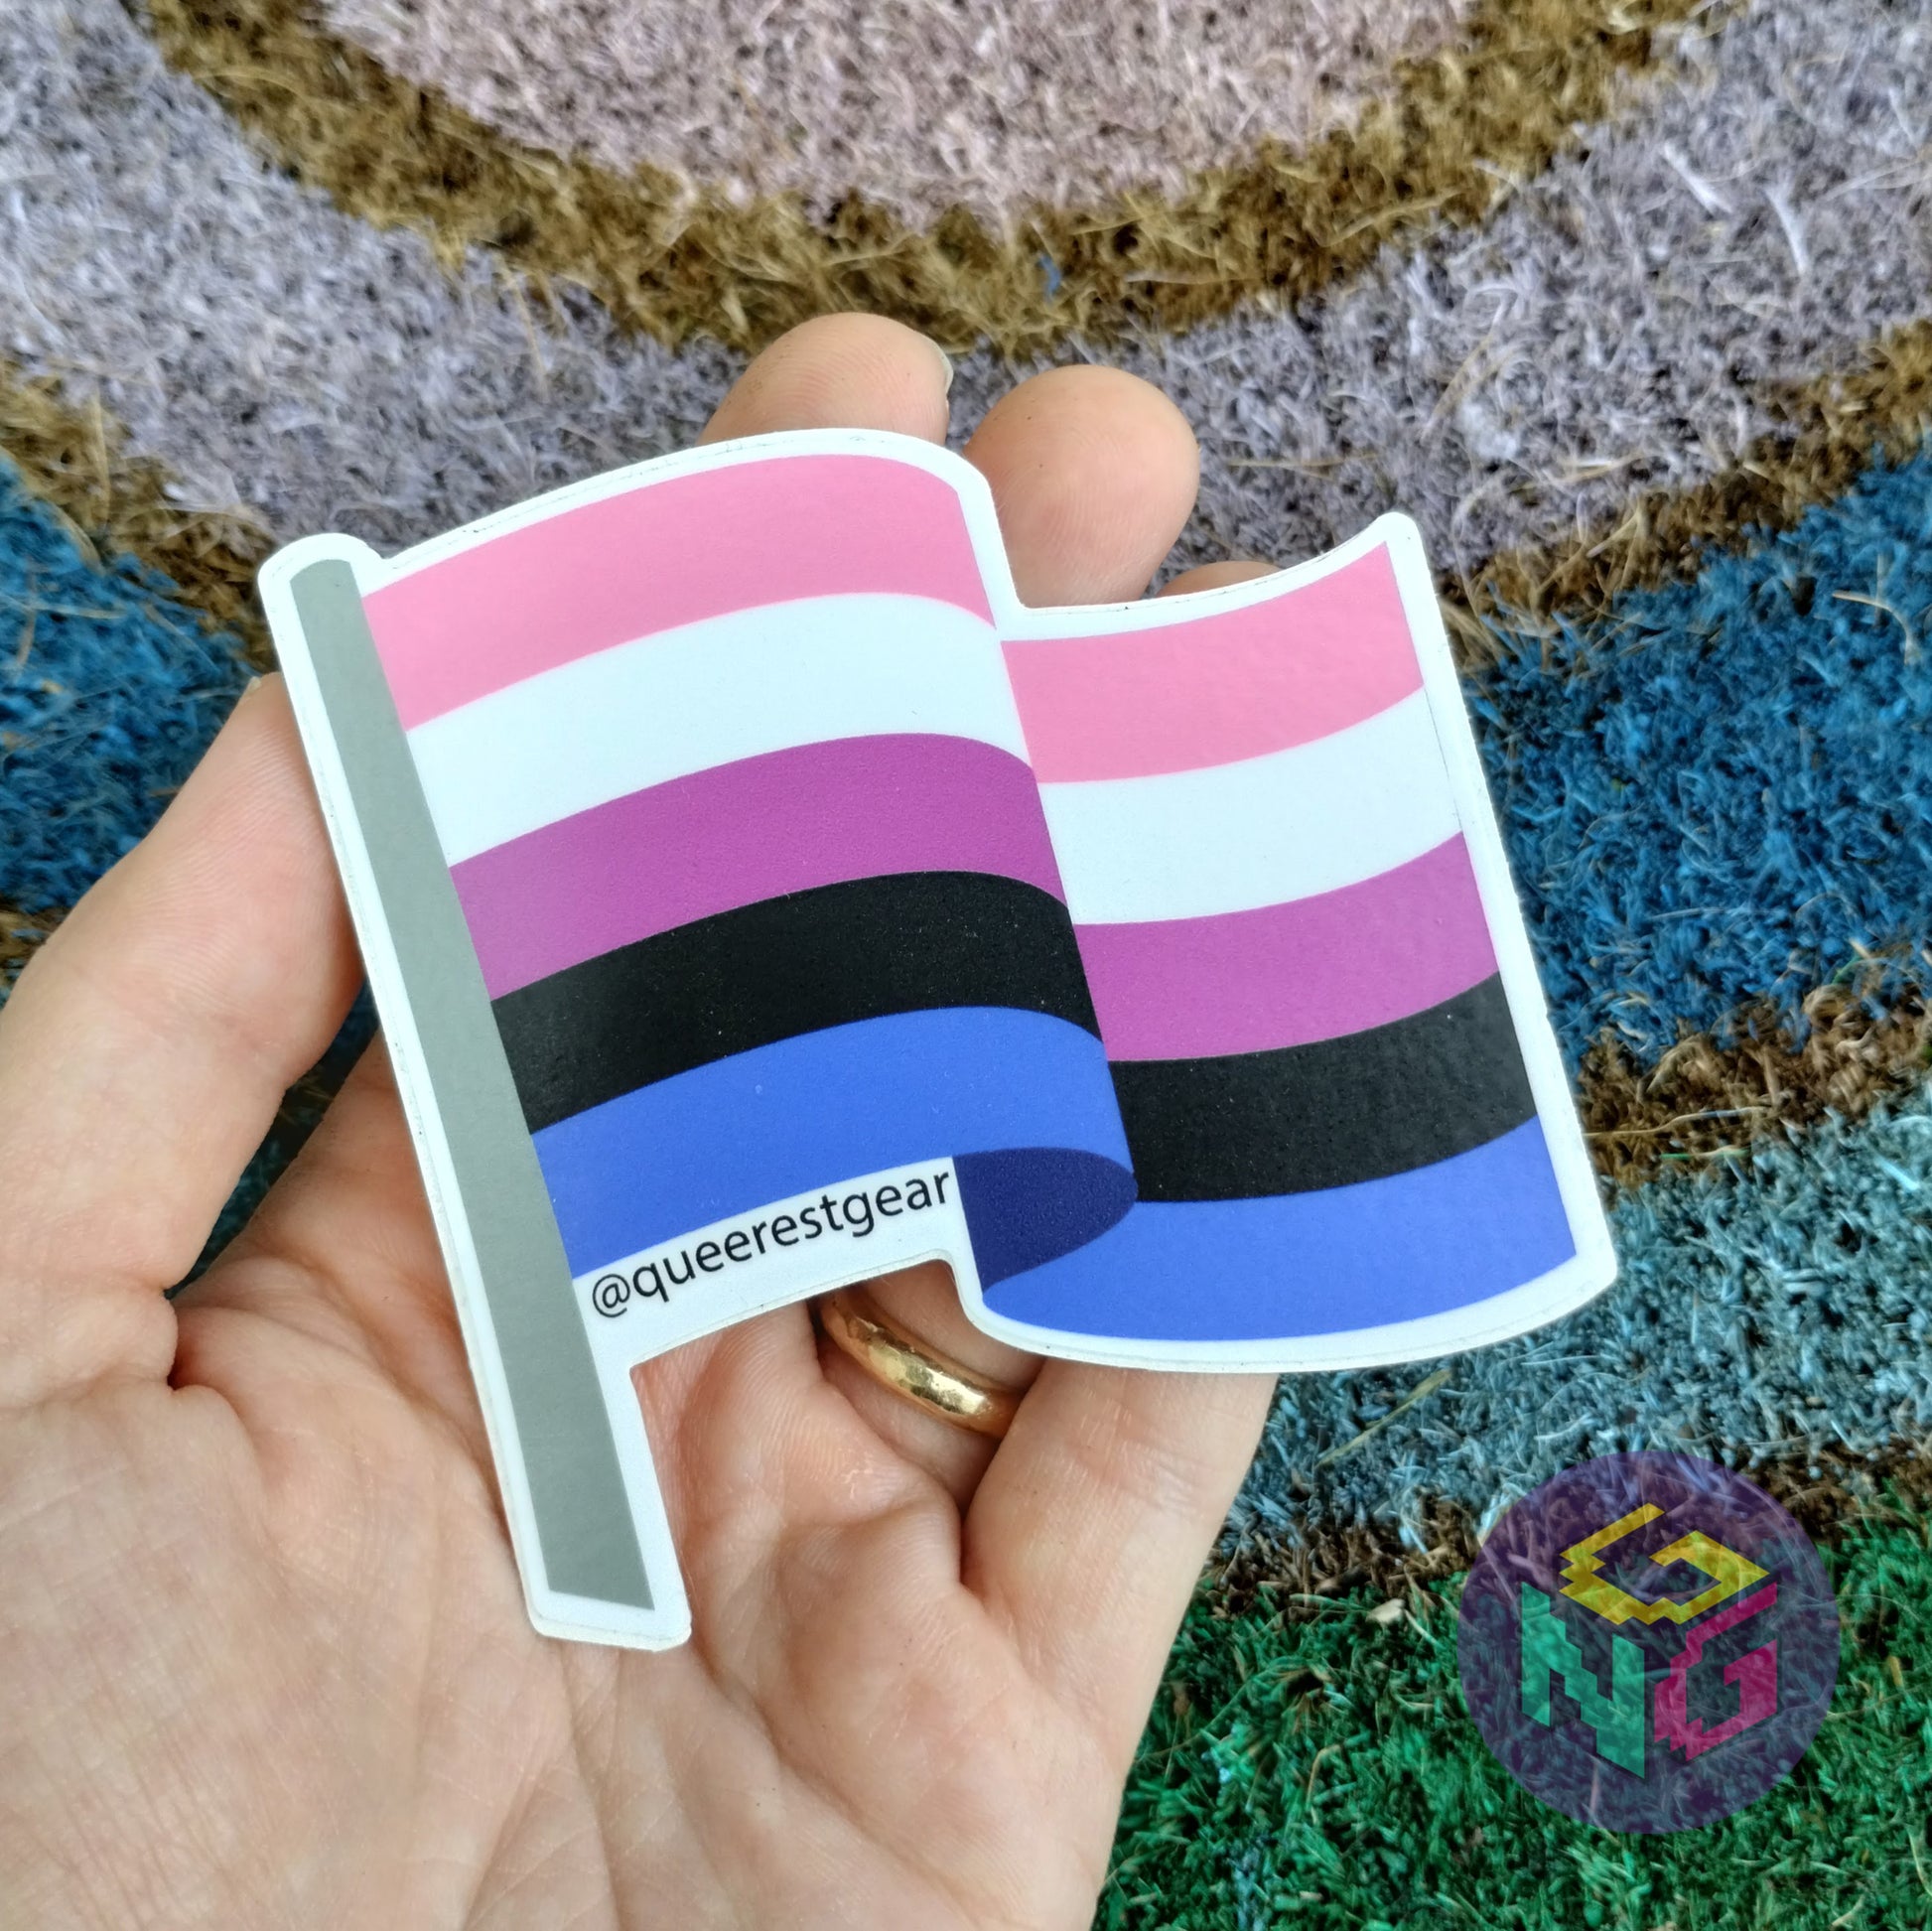 genderfluid flag vinyl sticker held in hand in front of rainbow welcome mat